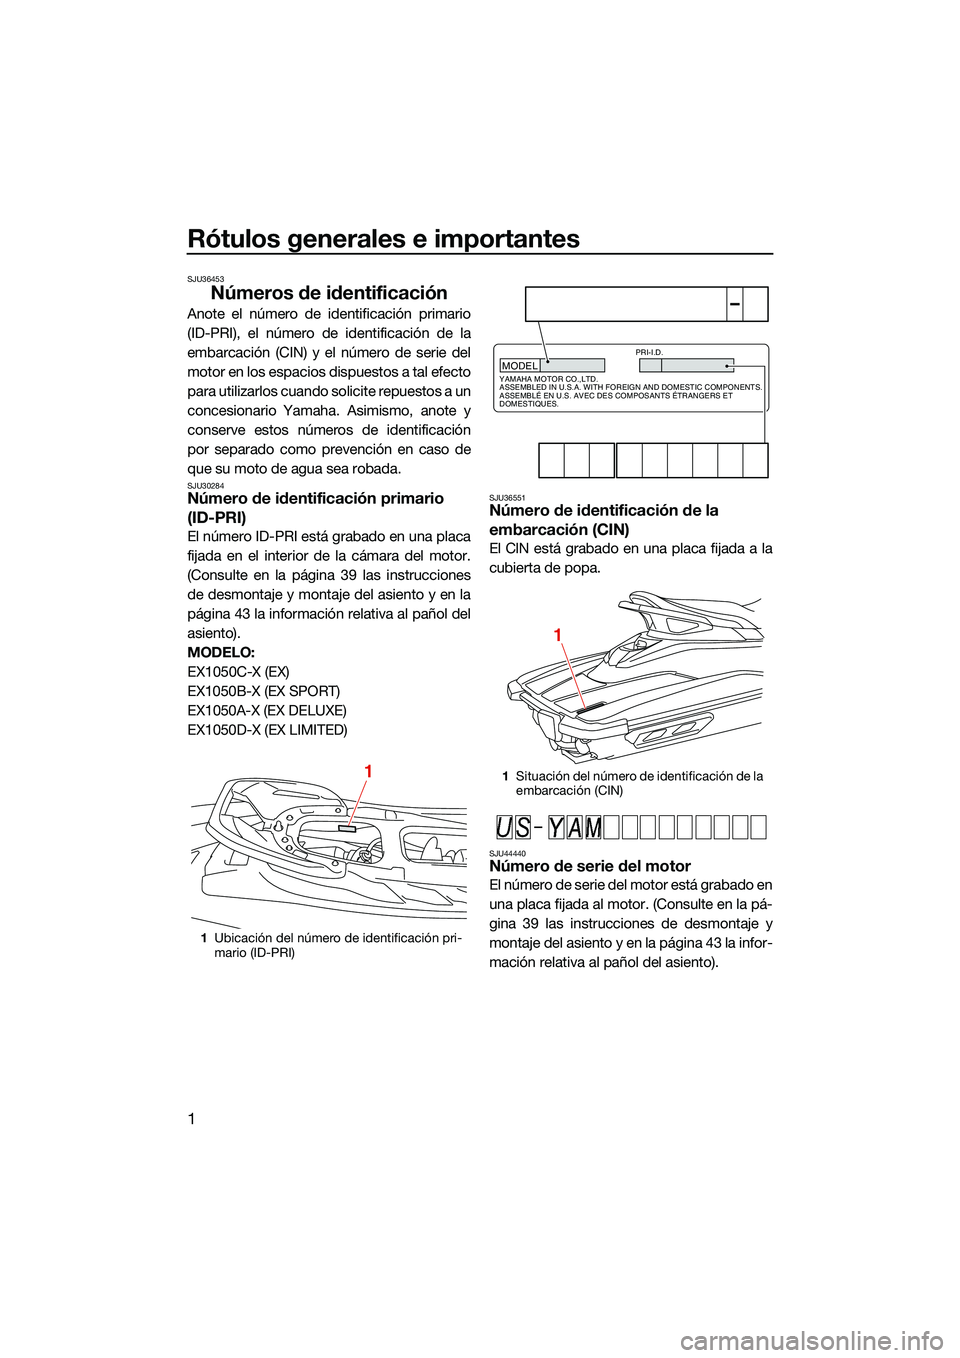 YAMAHA EX DELUXE 2022  Manuale de Empleo (in Spanish) Rótulos generales e importantes
1
SJU36453
Números de identificación
Anote el número de identificación primario
(ID-PRI), el número de identificación de la
embarcación (CIN) y el número de se